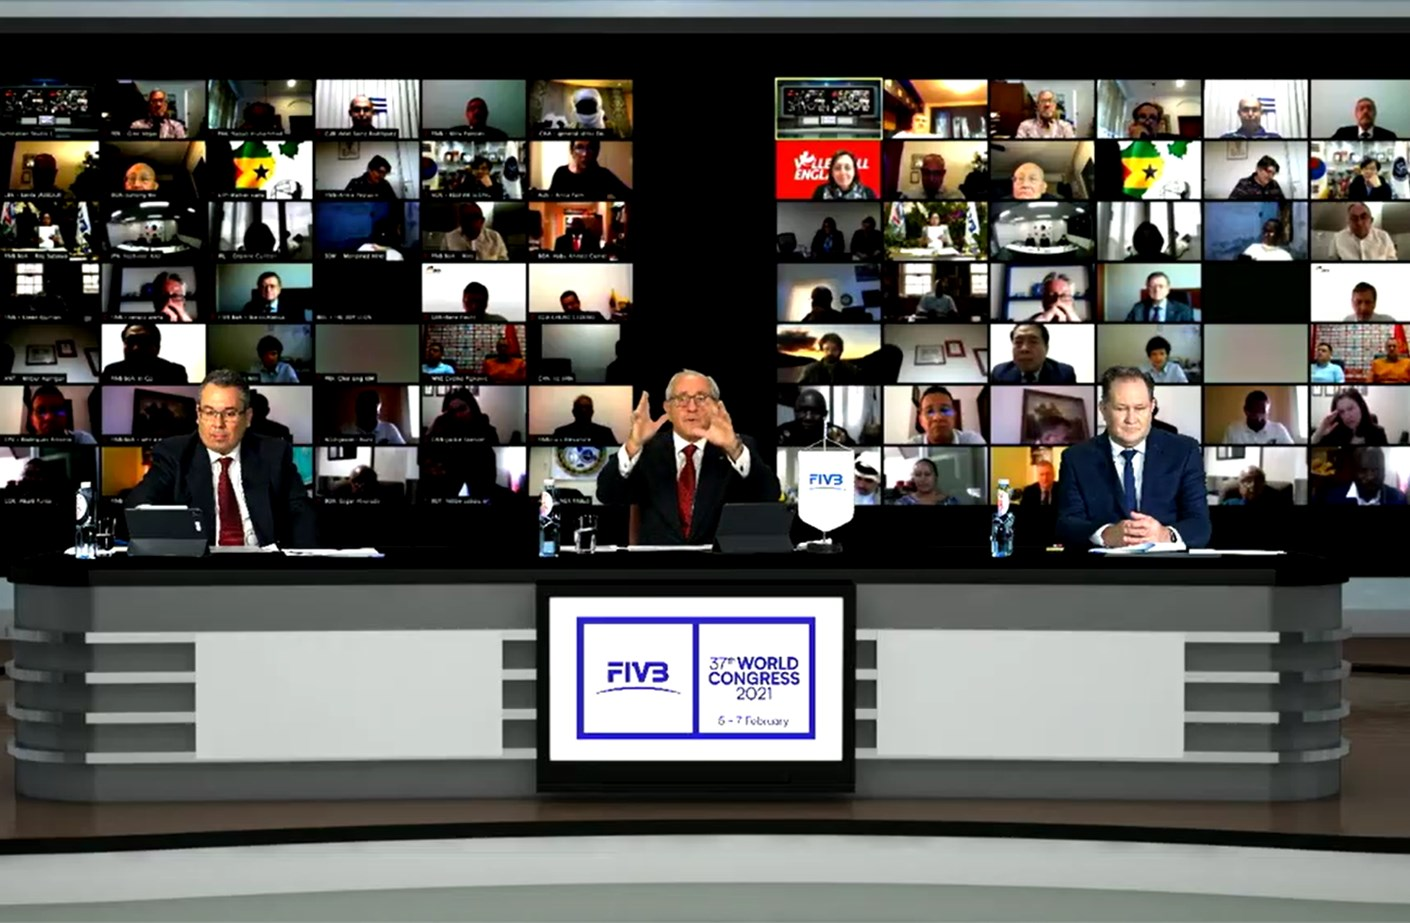 La FIVB a élu son nouveau Bureau lors du Congrès virtuel de l'organisation © FIVB